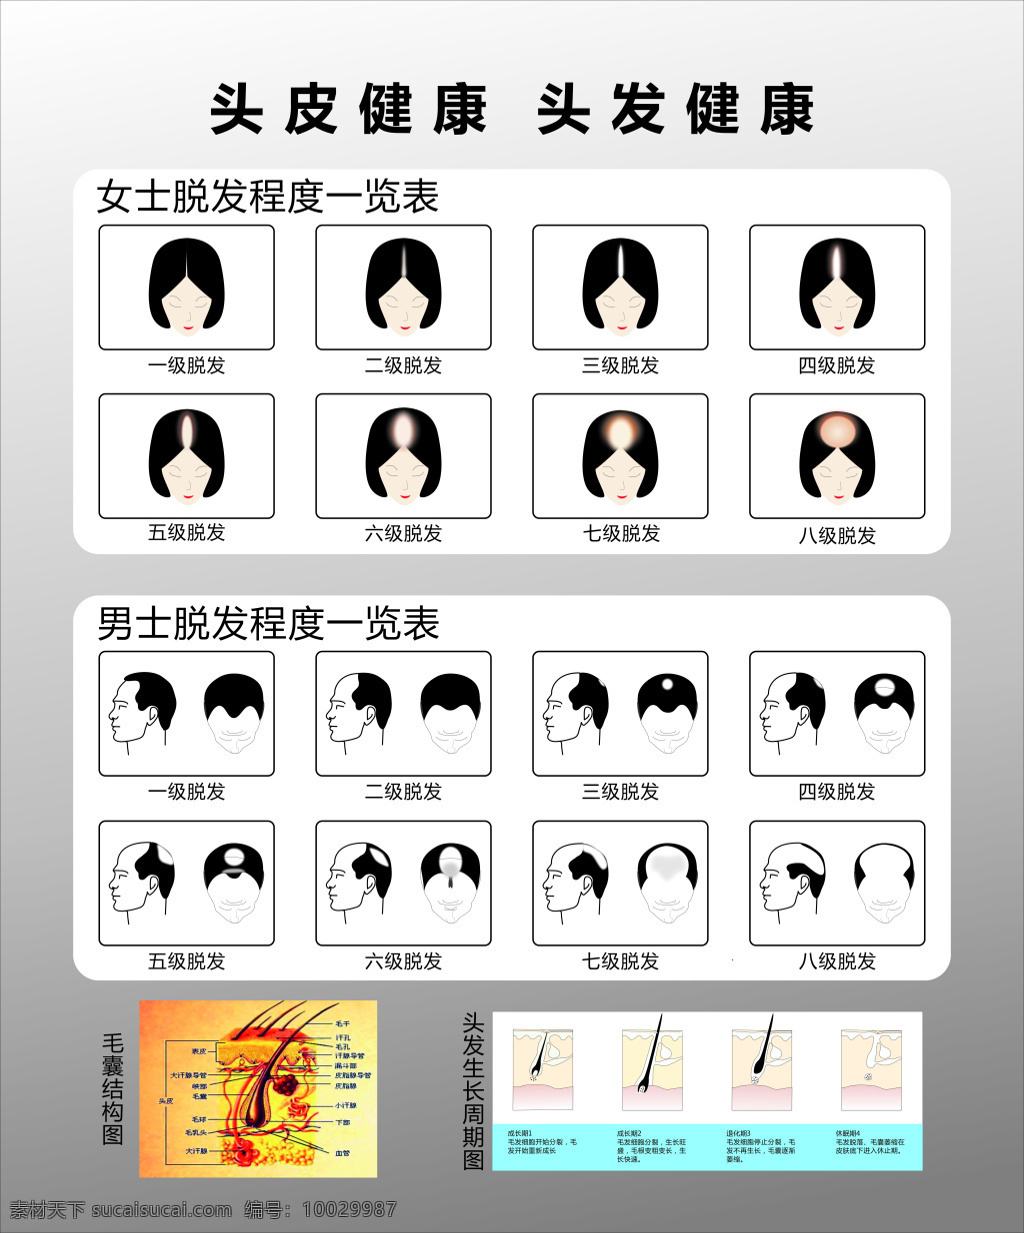 头发 分级 示意图 男 女式 脱发 毛发生长周期 分级示意图 毛发 头皮 健康 毛囊